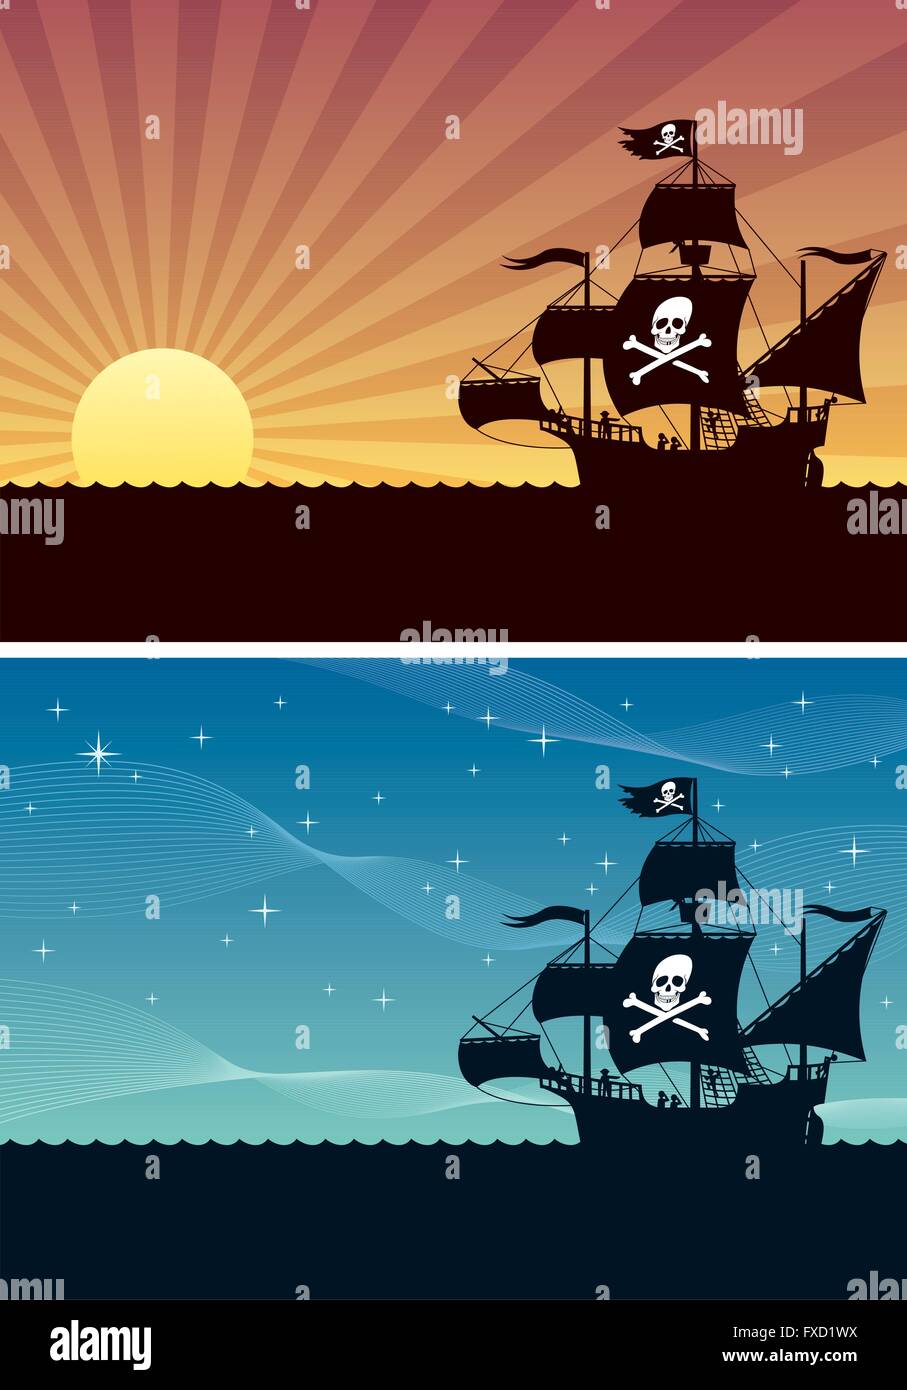 Deux milieux cartoon avec bateaux pirates. Chacun est dans une proportions4 mais vous pouvez étendre la zone noire vers le bas. Illustration de Vecteur